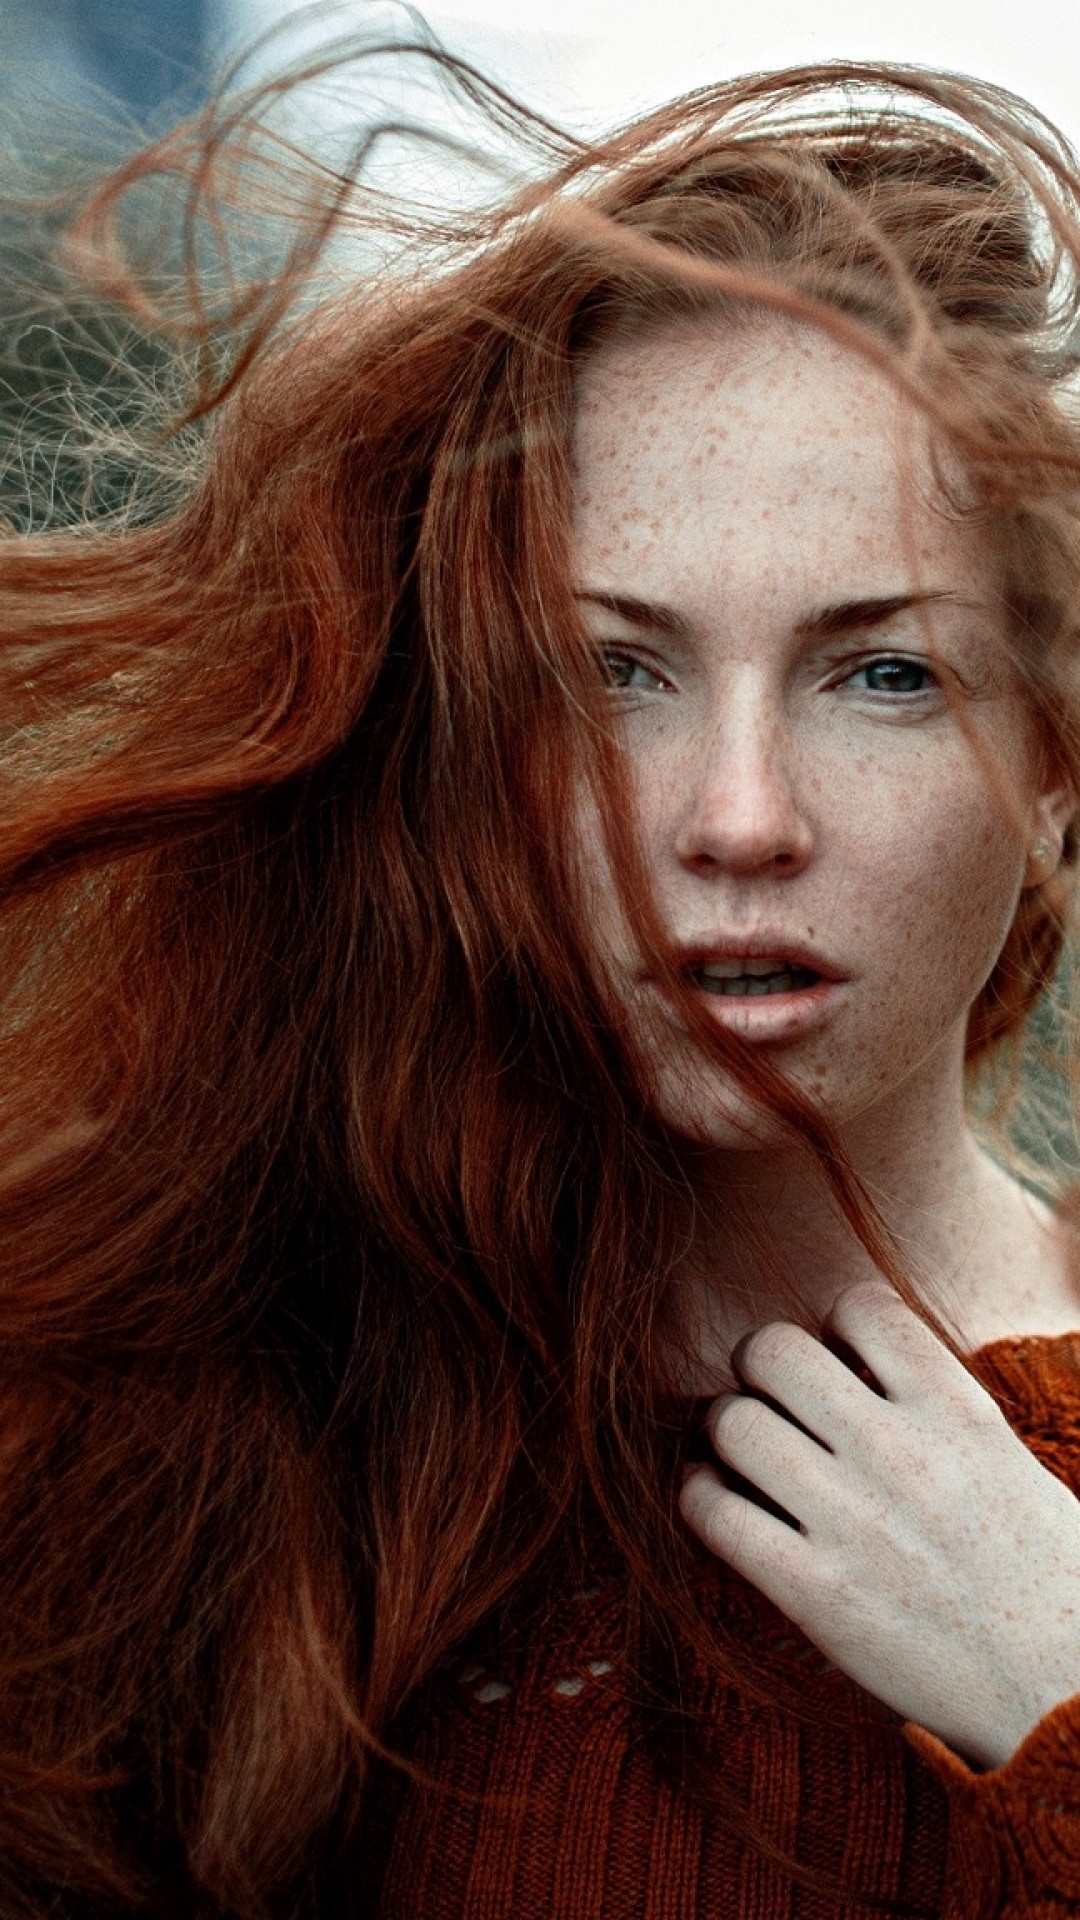 Redhead, Freckles, Open Mouth, Model, Women, Sweater - Oksana Butovskaya , HD Wallpaper & Backgrounds